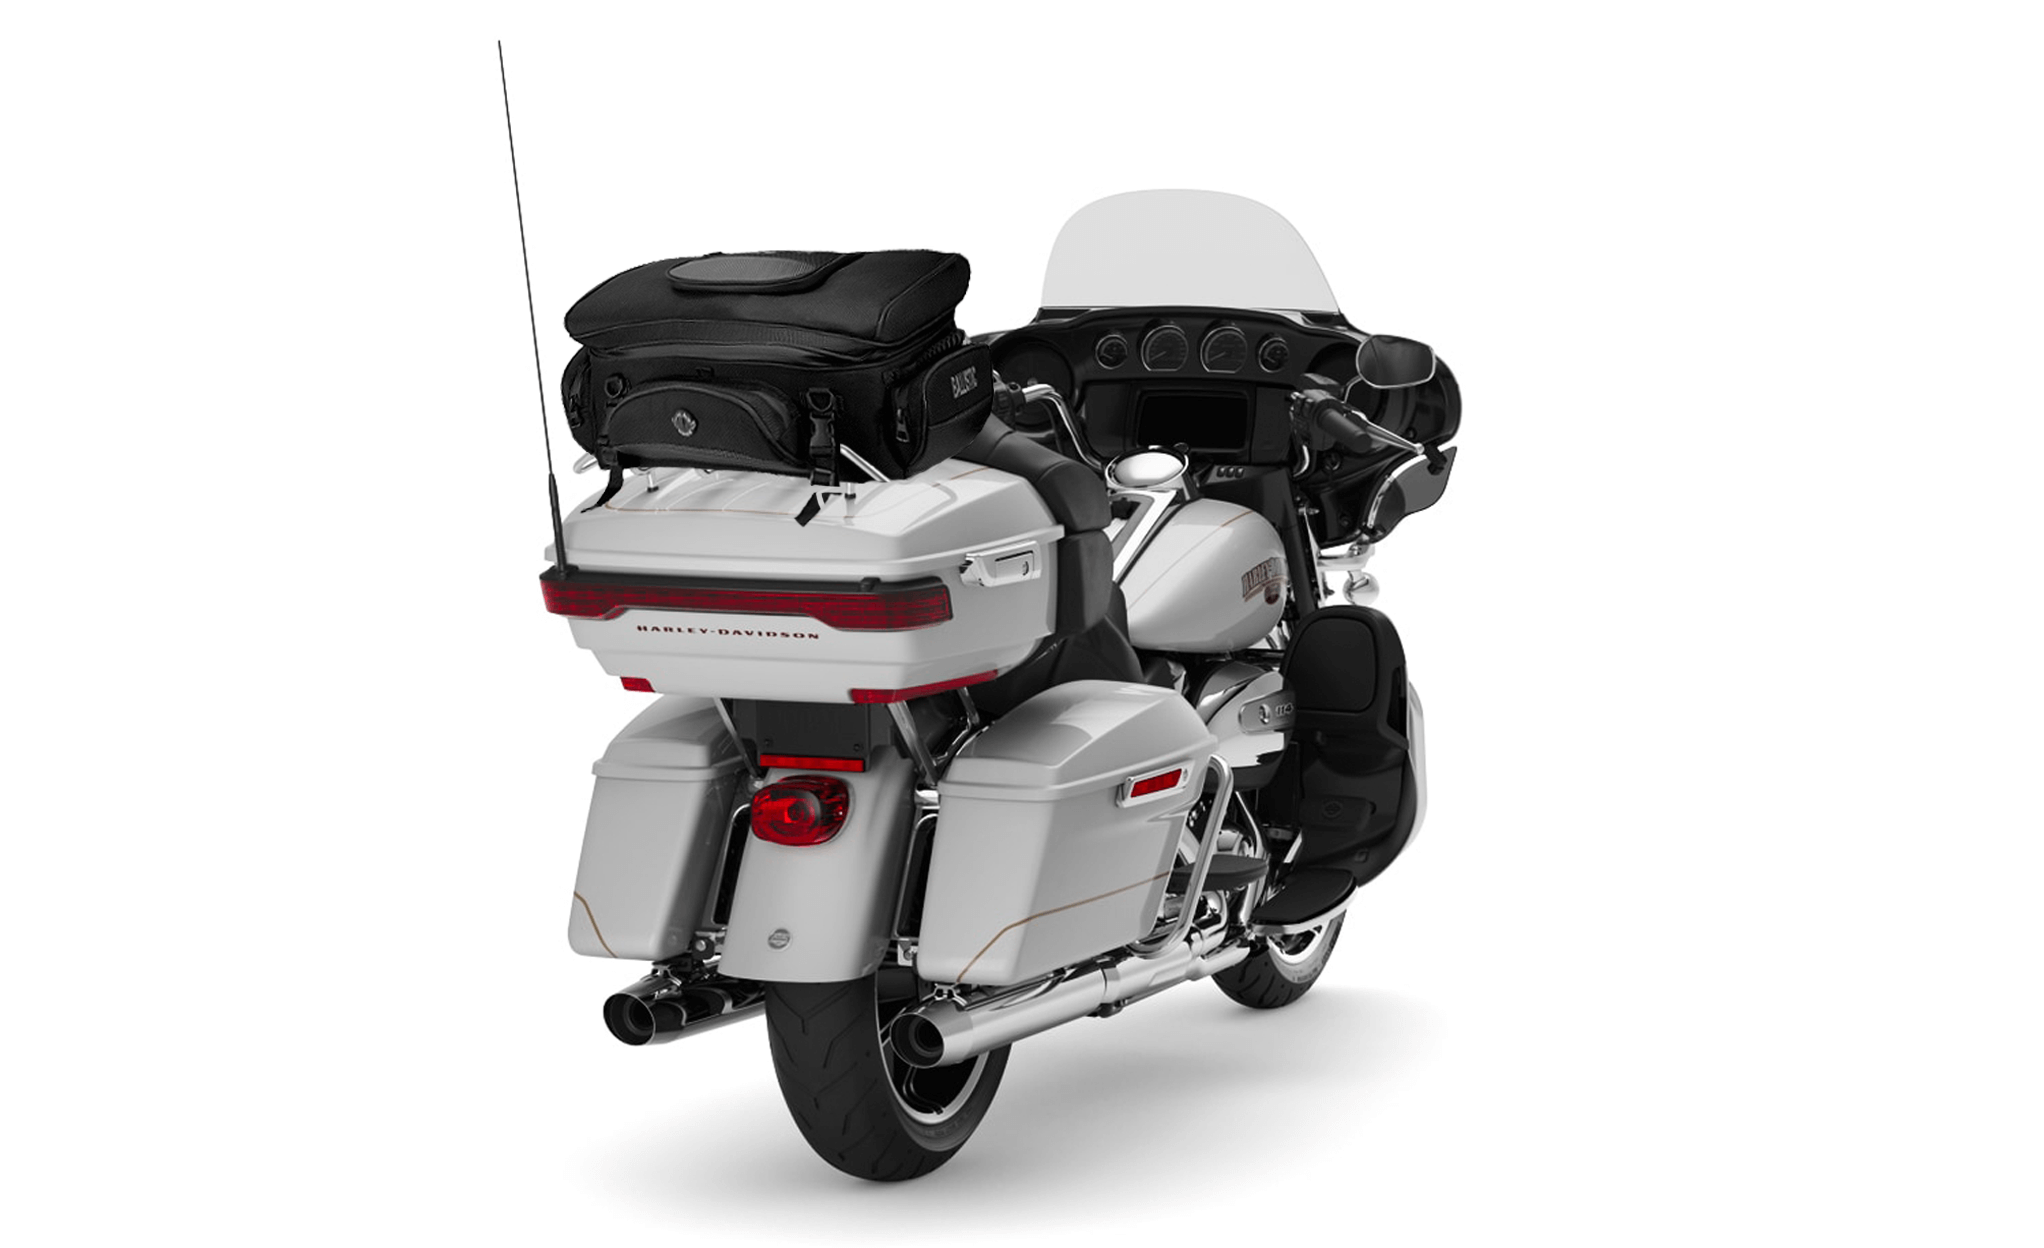 Viking Voyage Elite XL Yamaha Motorcycle Sissy Bar Bag Bag on Bike View @expand